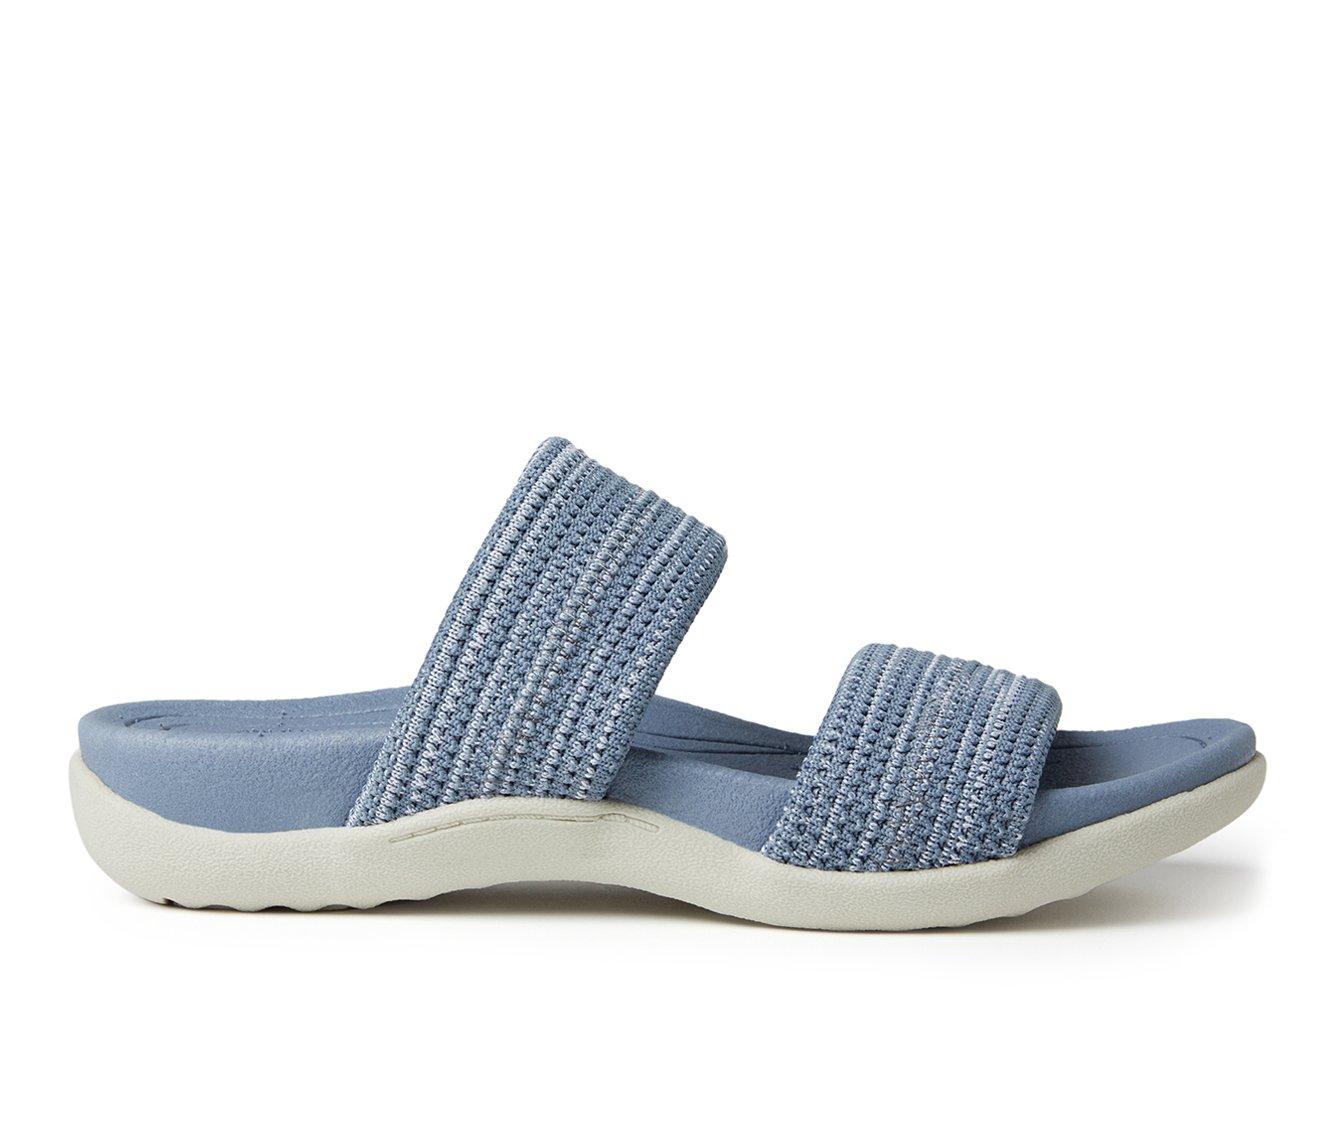 Women's Dearfoams OriginalComfort Low Foam Double Band Sandals